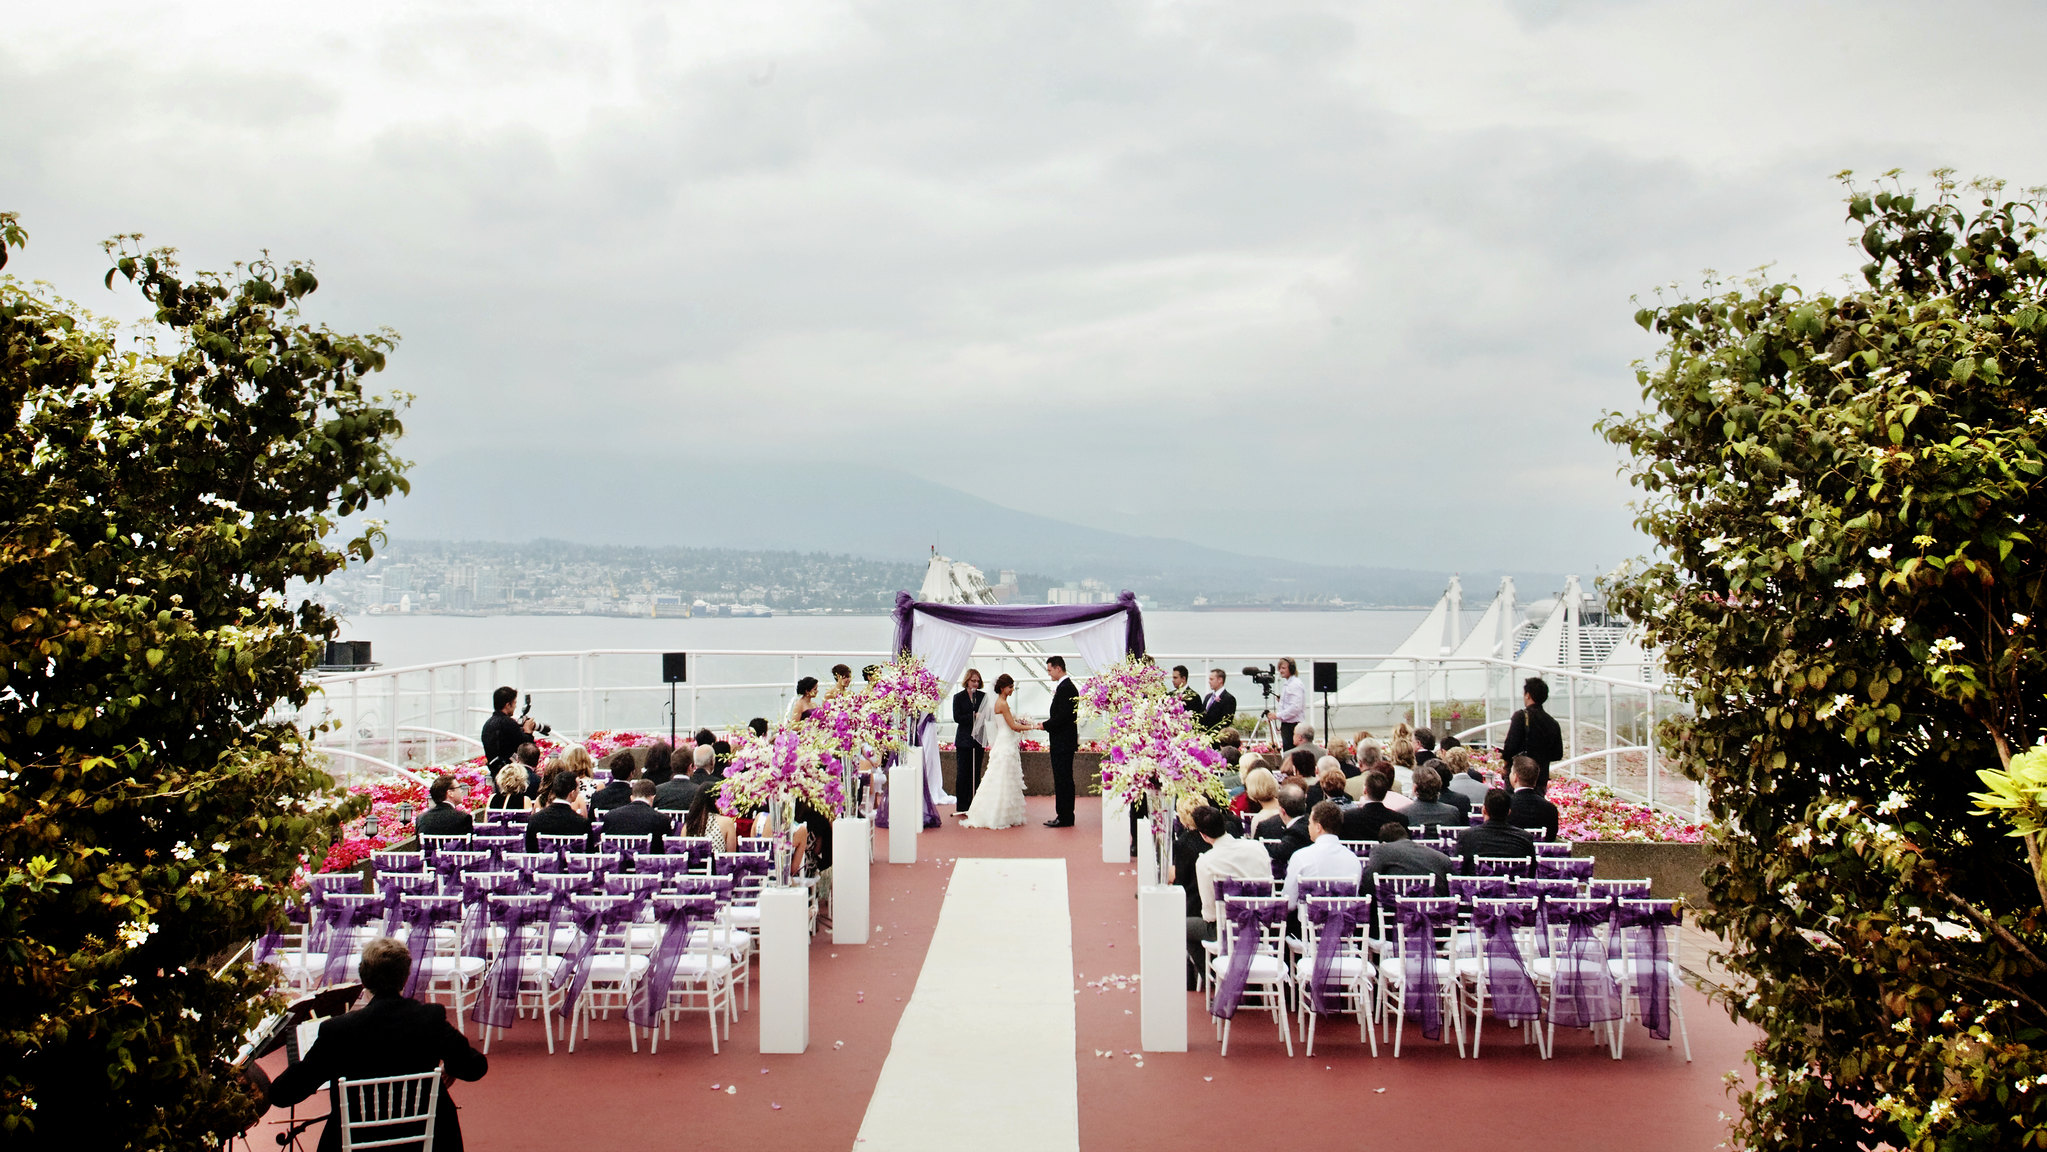 Una boda en la azotea. El océano es visible en la distancia.